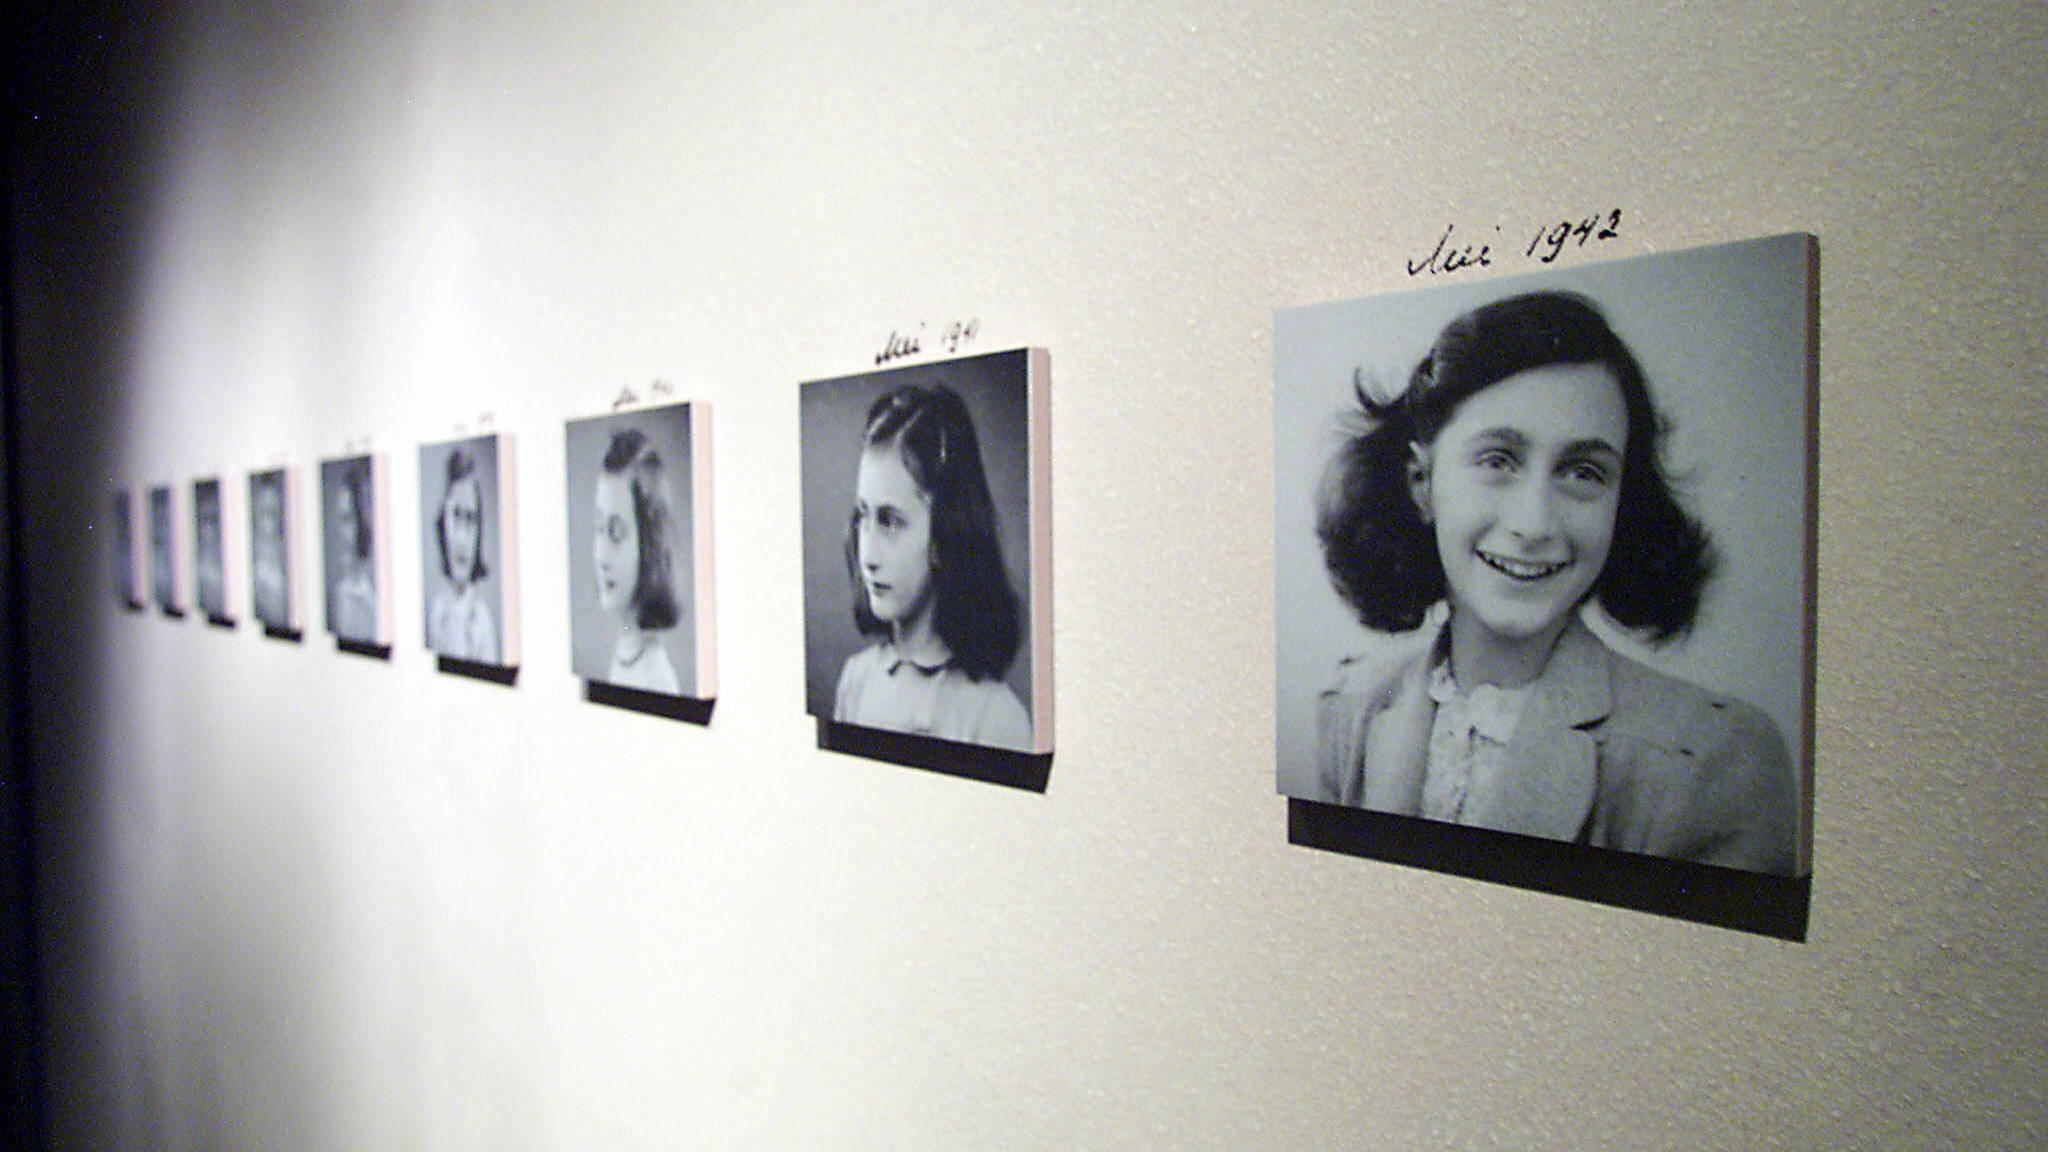 mehrere Fotos von Anne Frank wurden für eine Ausstellung aufgehängt